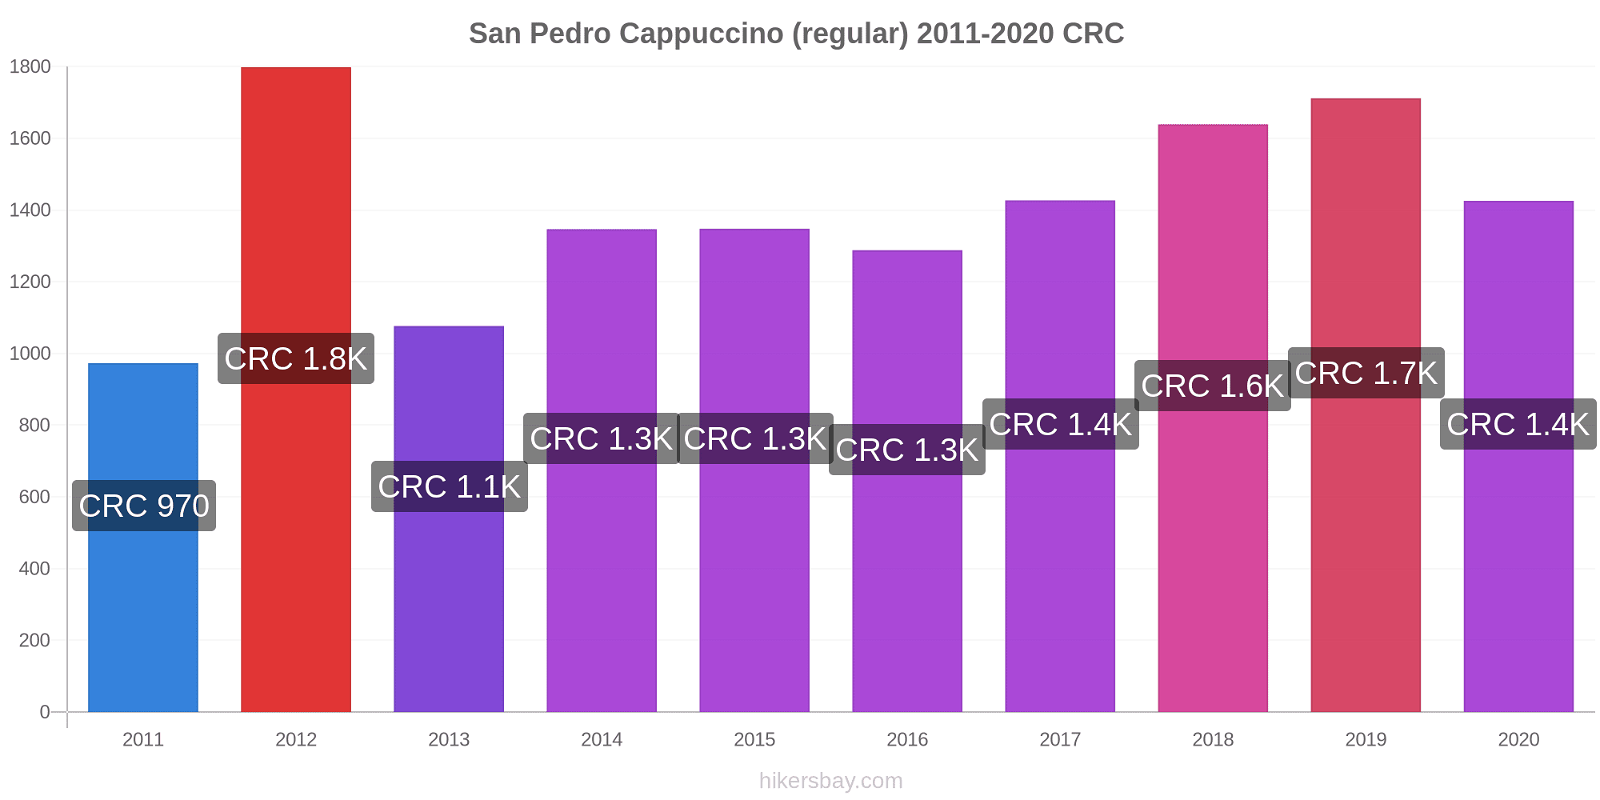 San Pedro price changes Cappuccino (regular) hikersbay.com